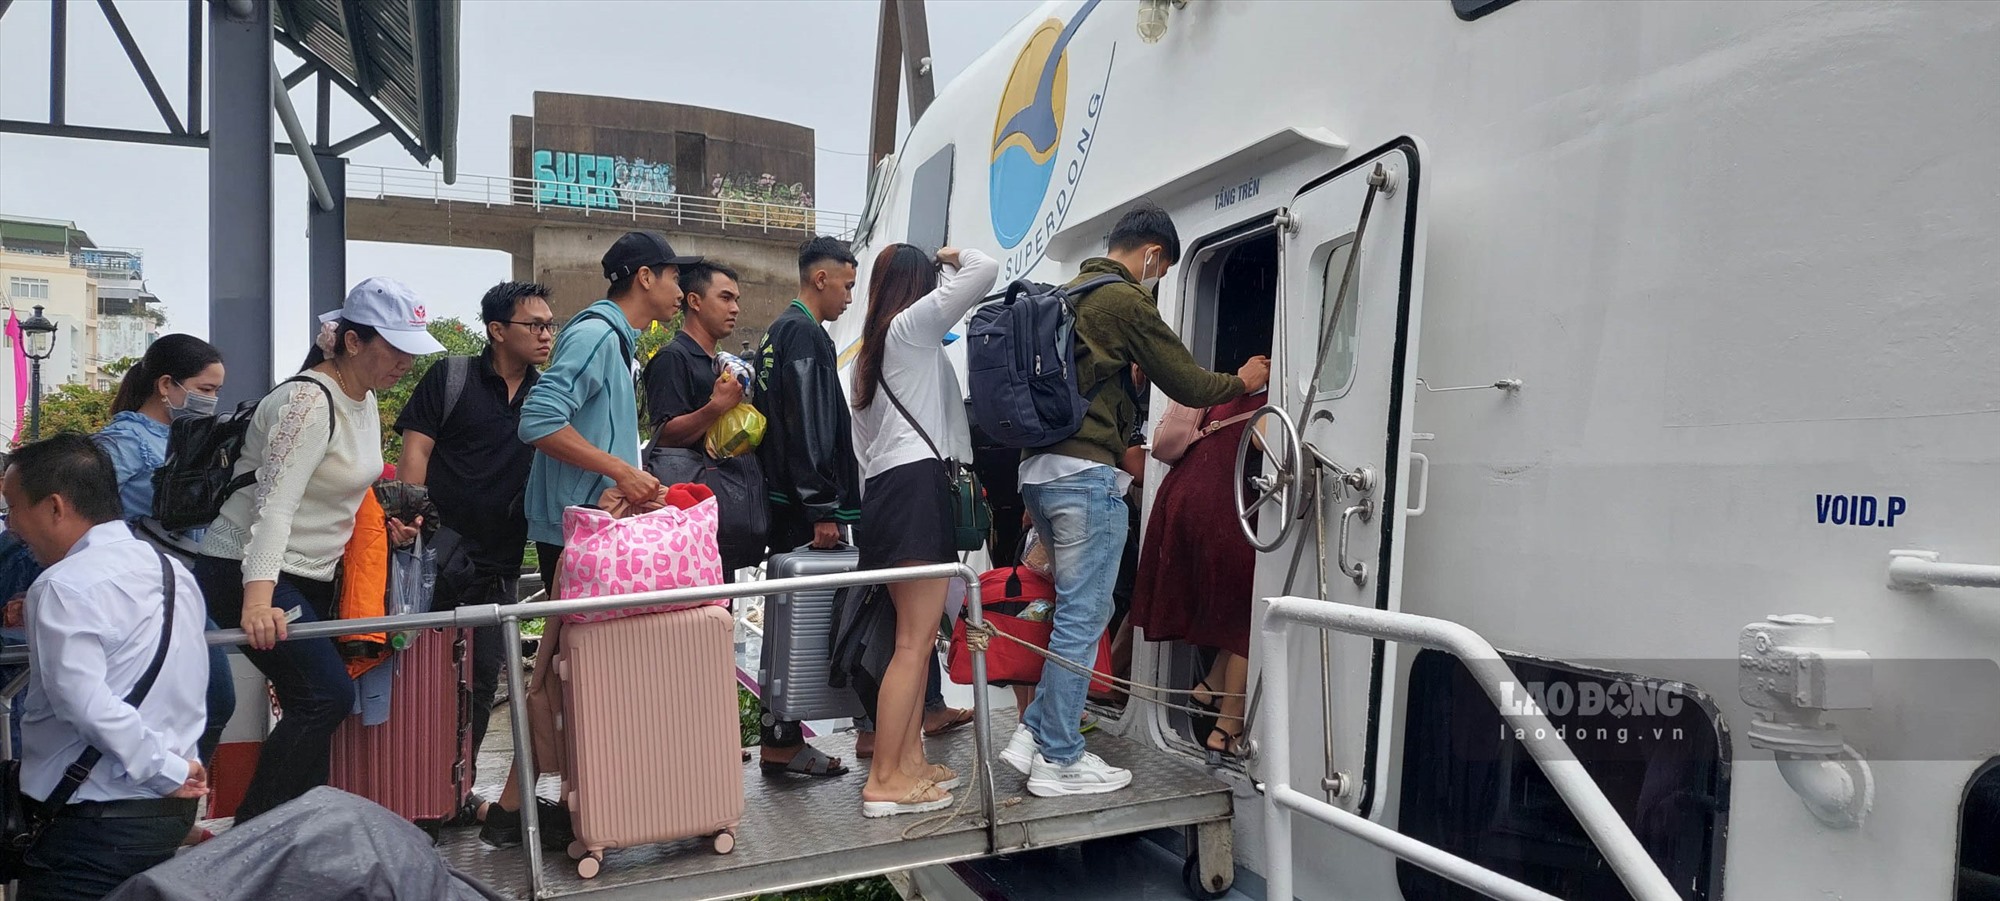 Hành khách đi tuyến Rạch Giá - Hòn Sơn lên tàu. Ảnh: Nguyên Anh